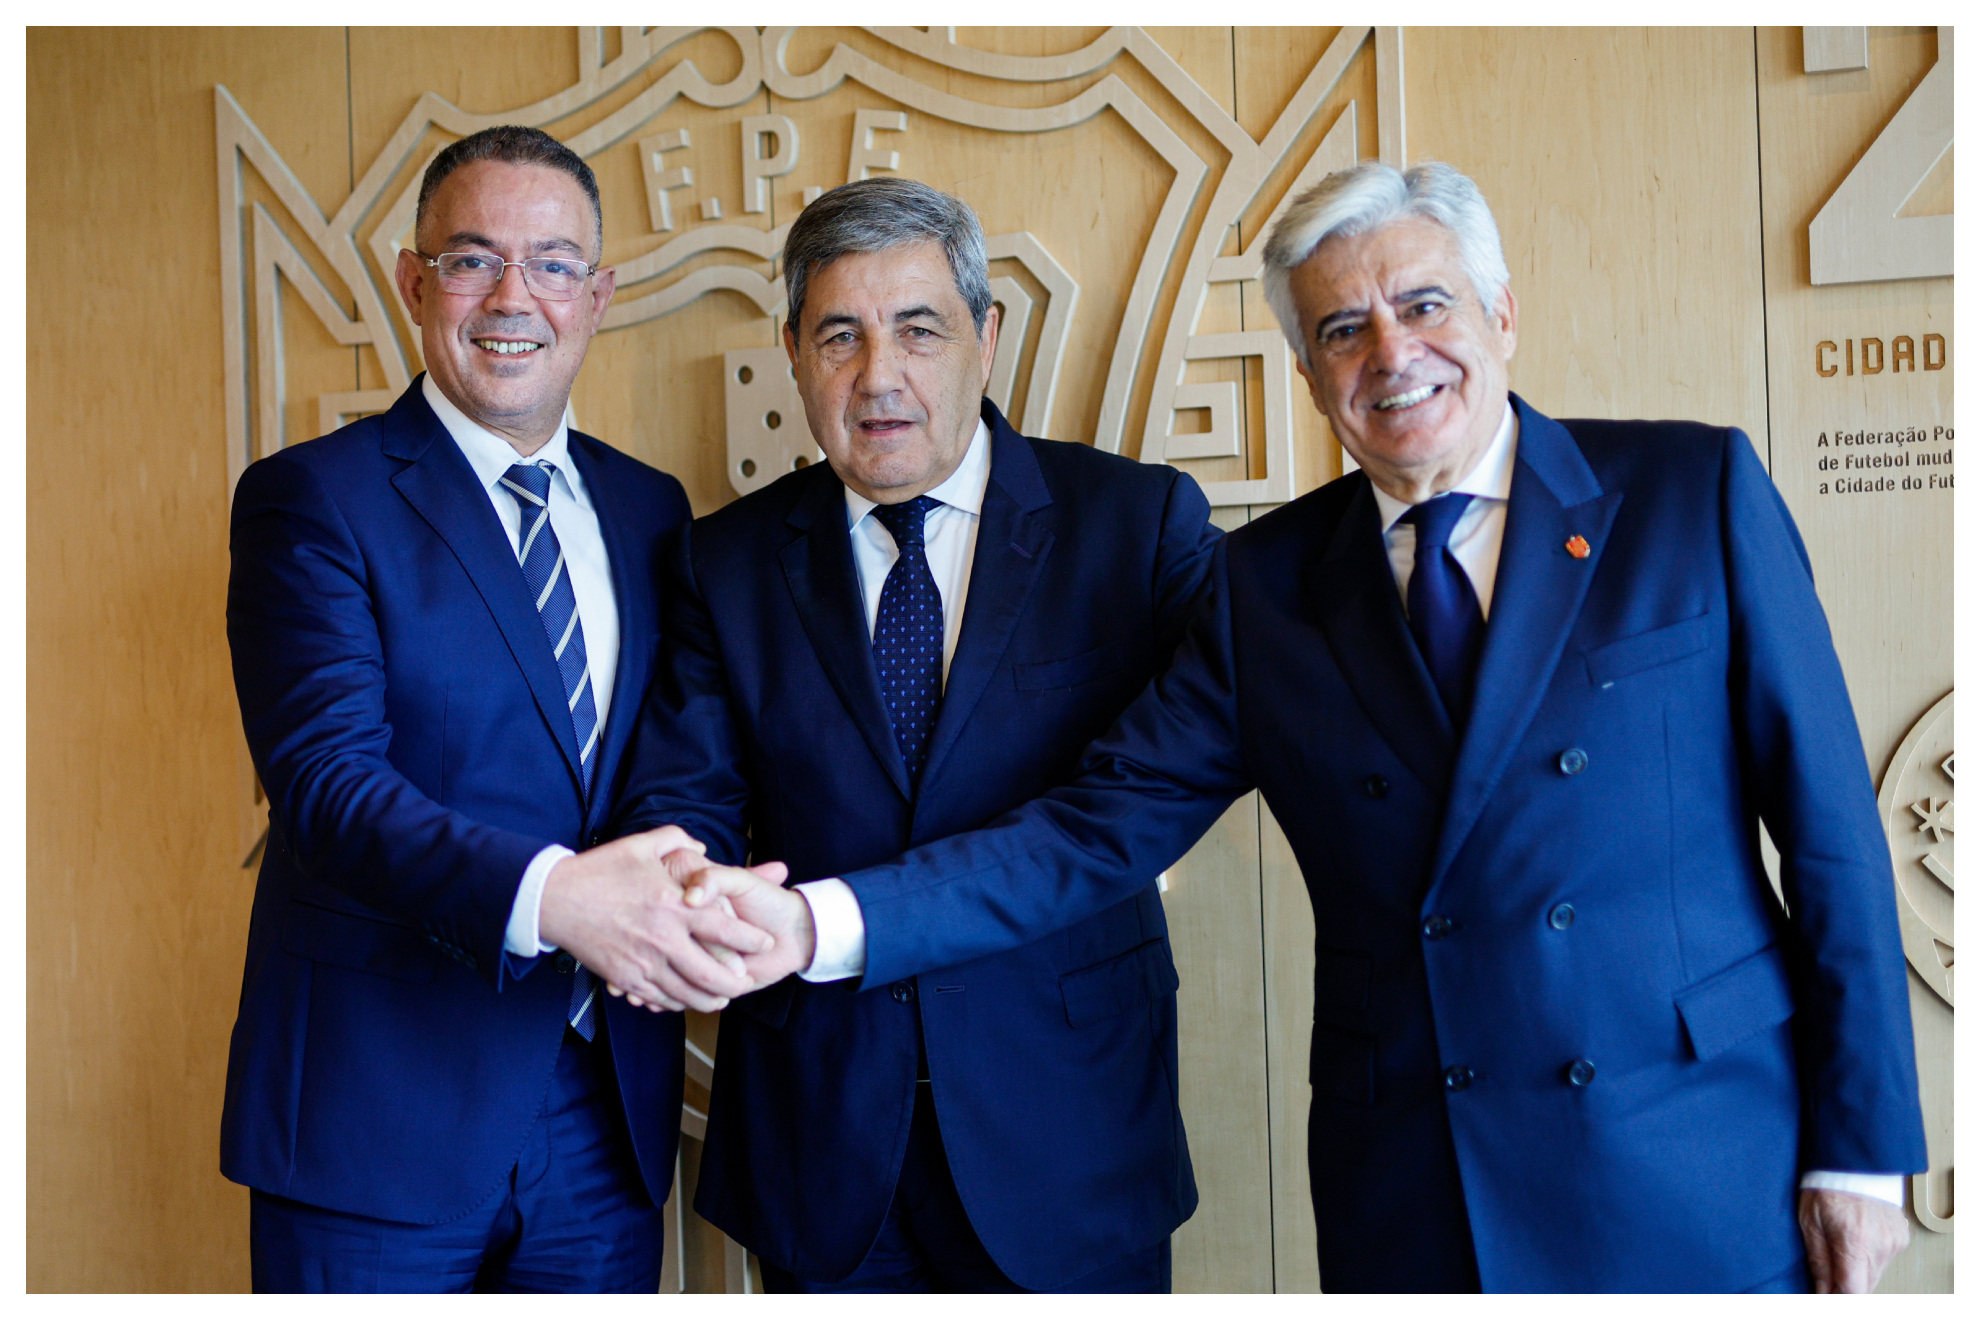 Los presidentes de las Federaciones de Marruecos, Portugal y España, Fouzi Lekjaa, Fernando Gomes y Pedro Rocha.